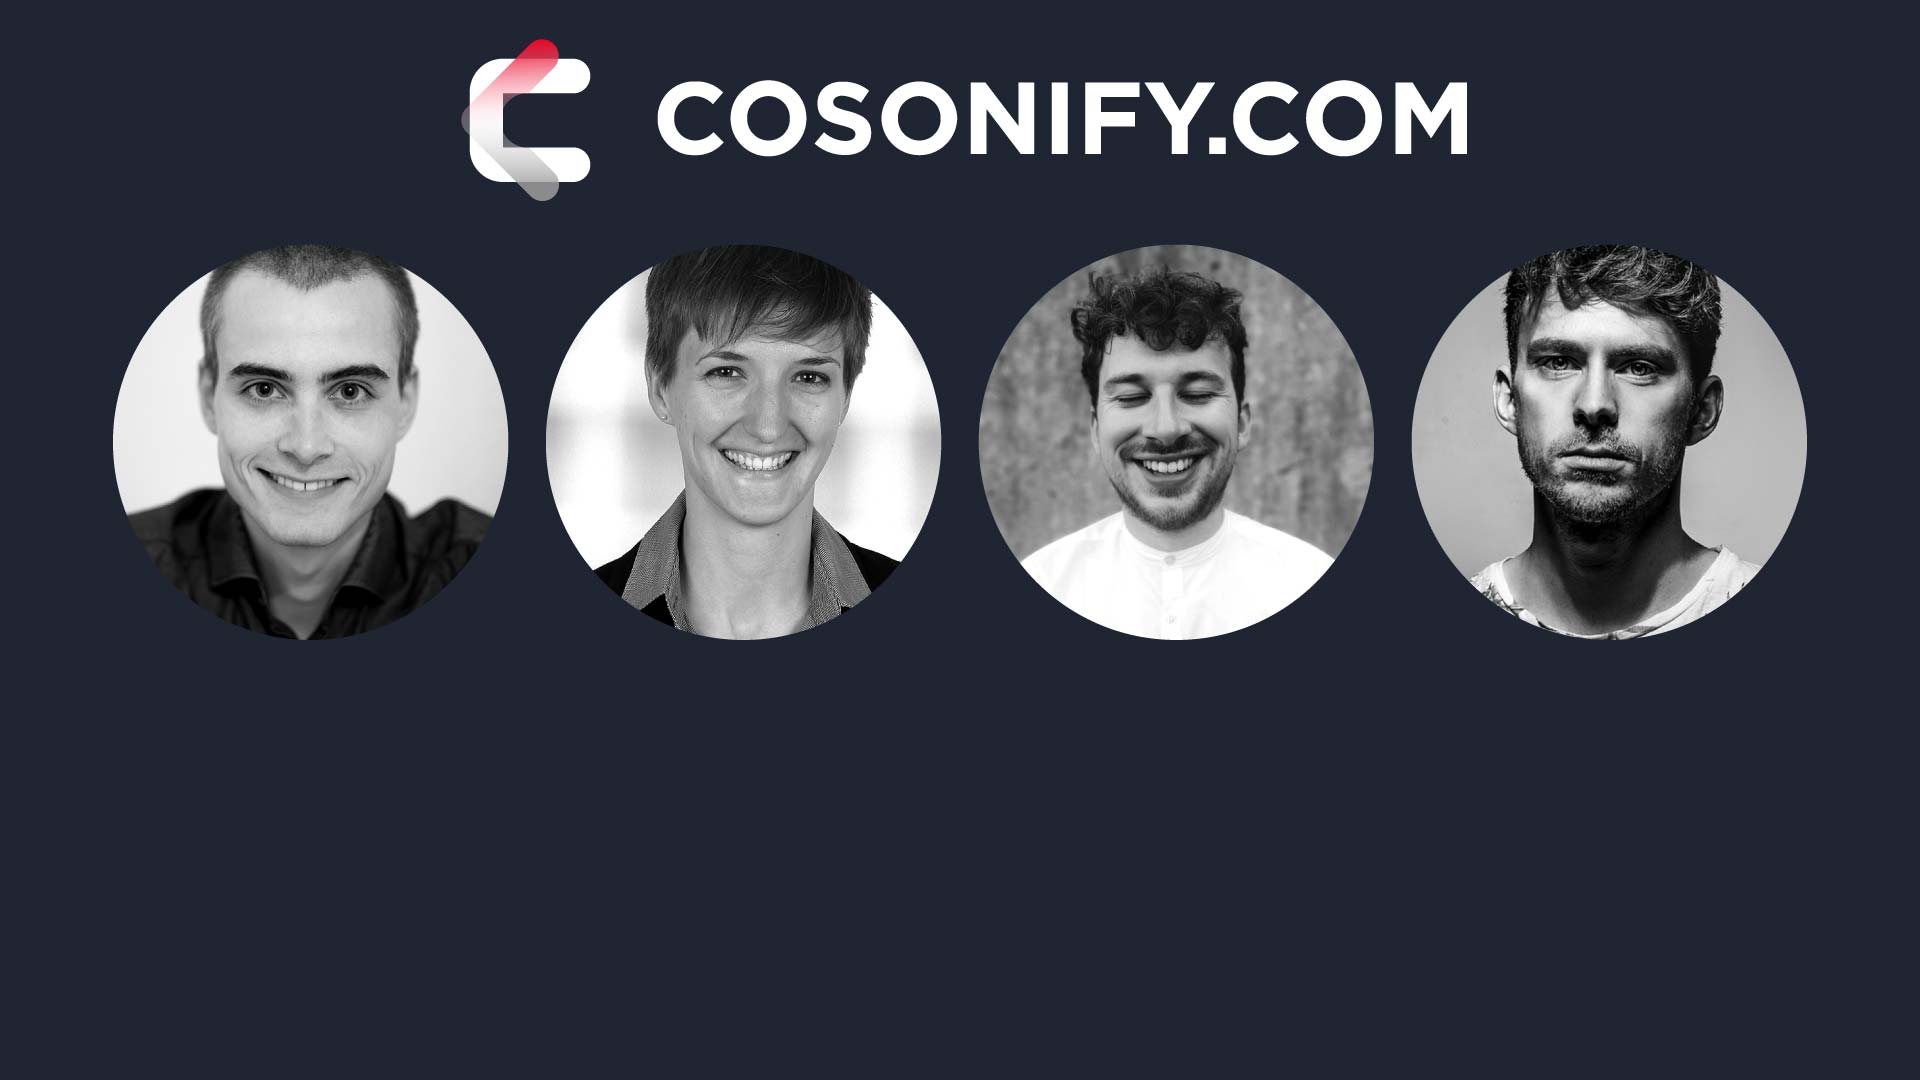 Teambild des Teams Cosonify mit Link zur Teamseite